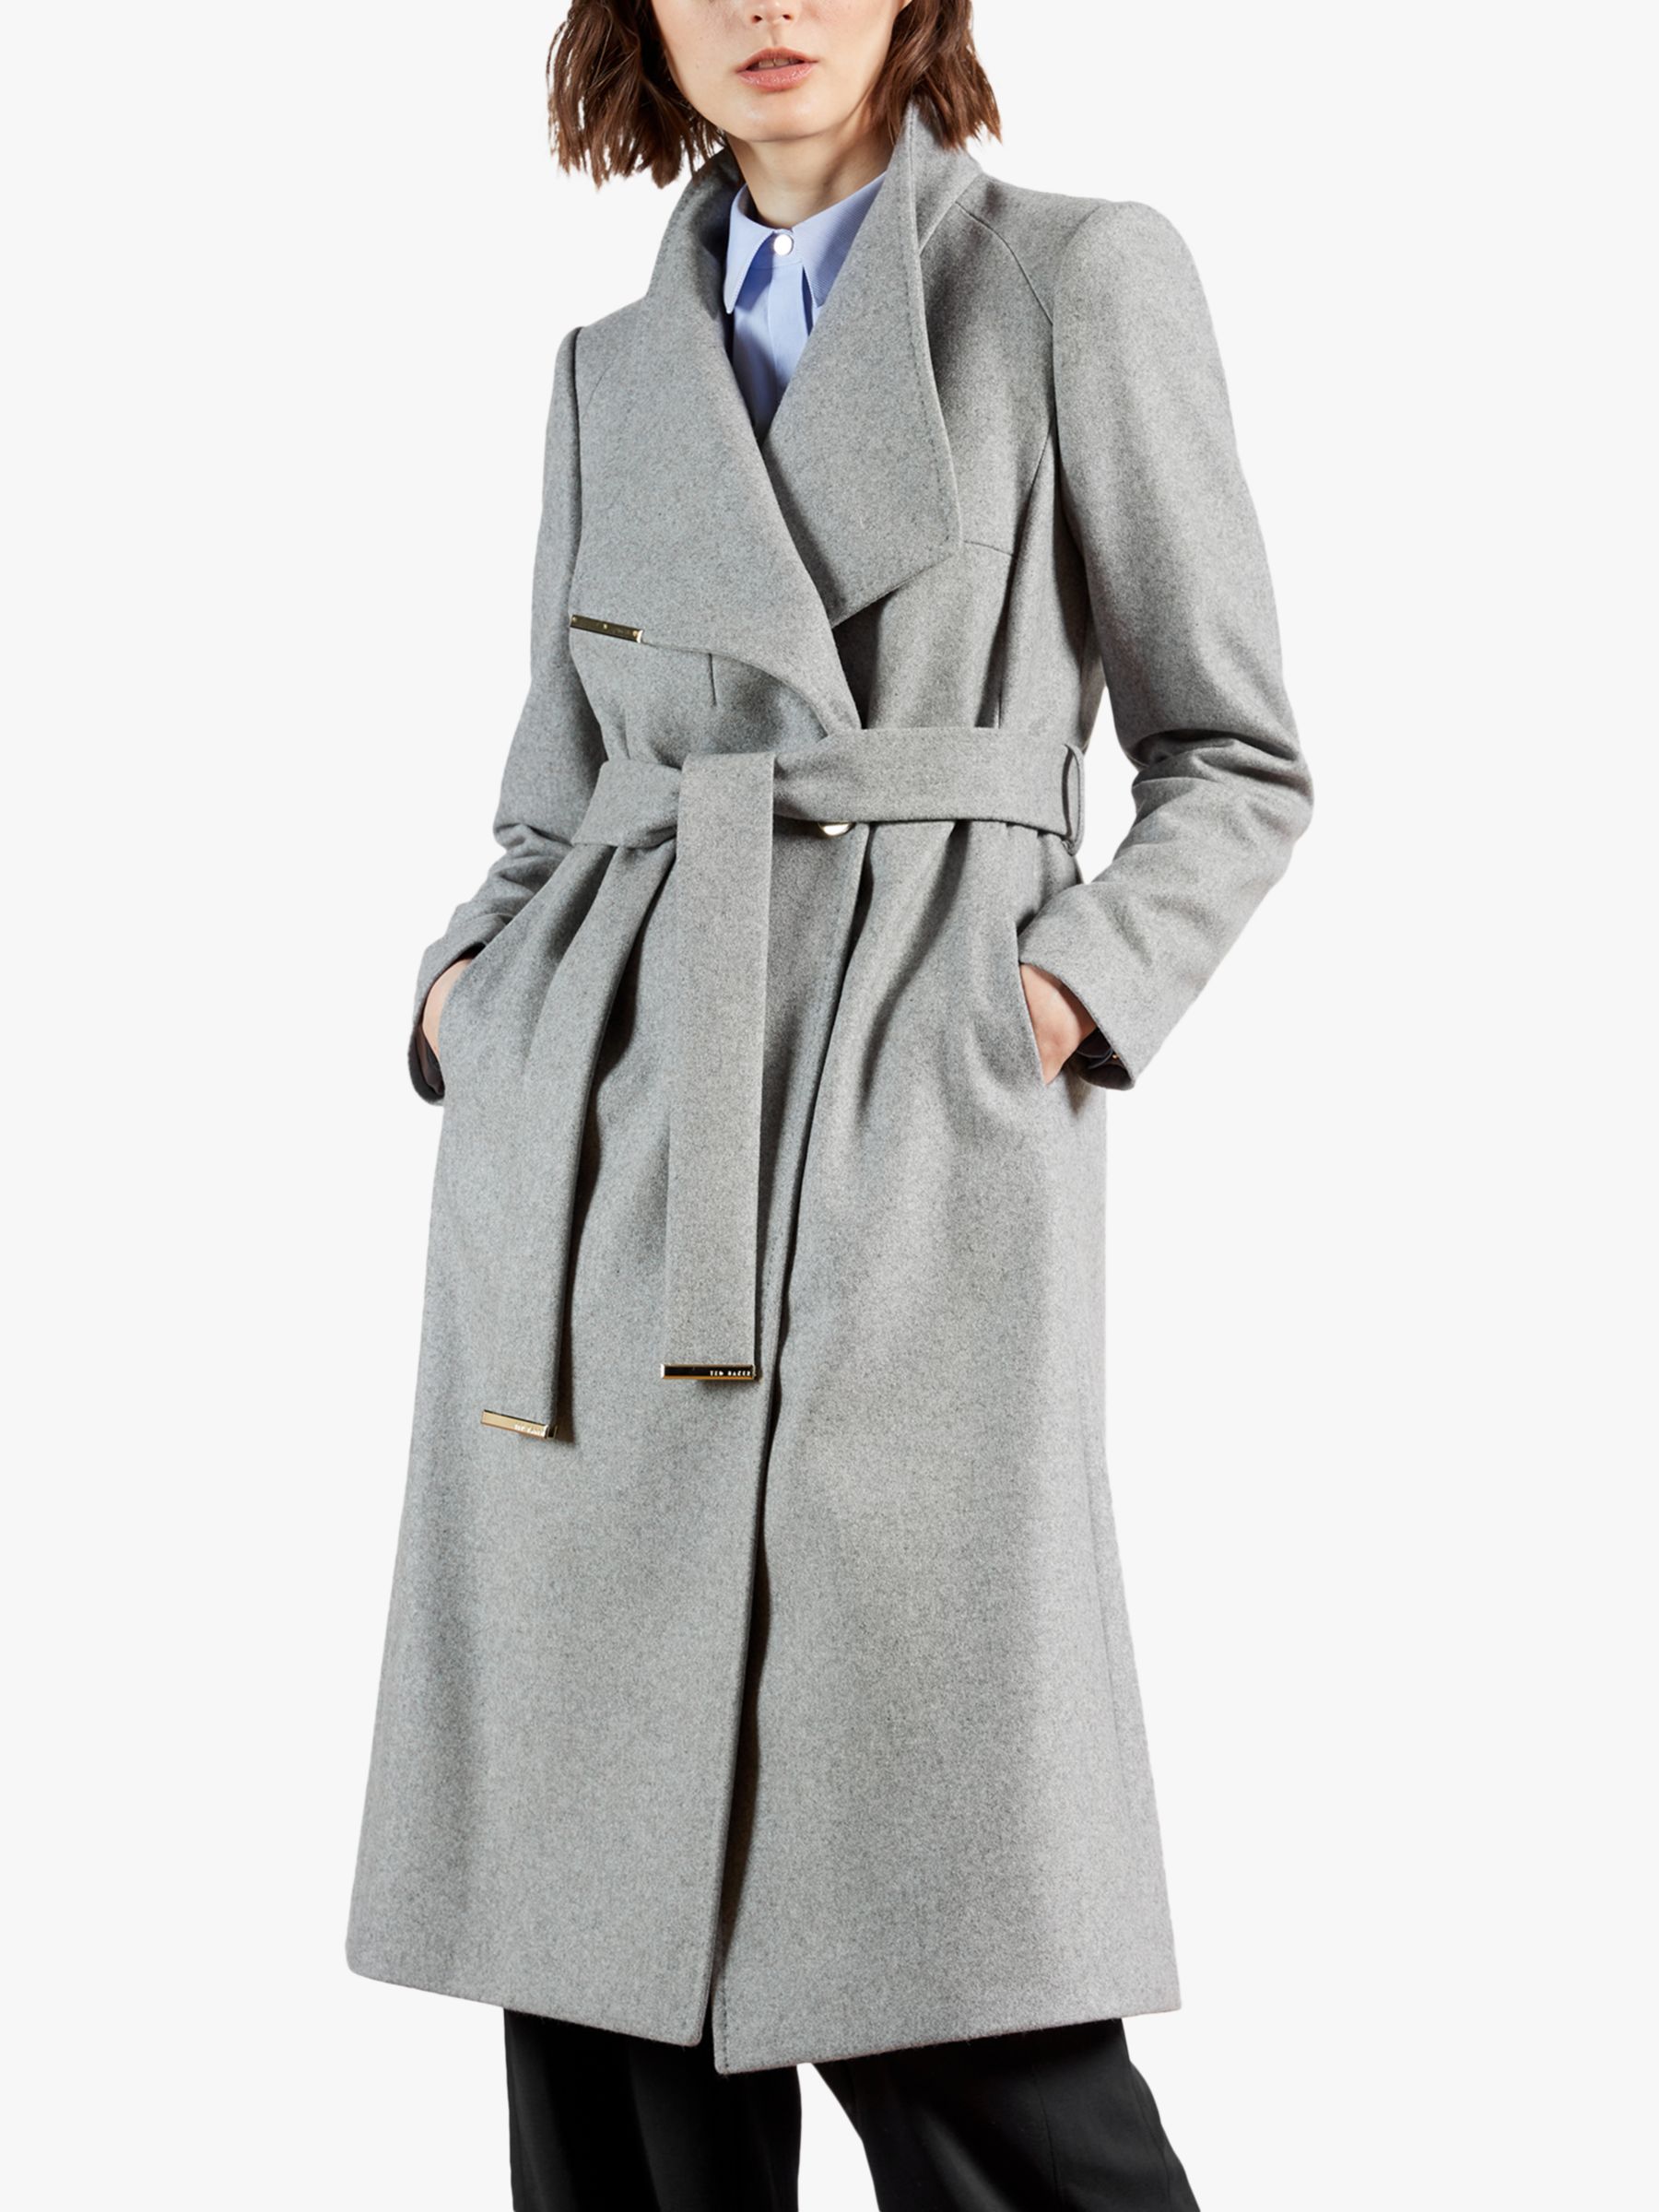 Ted Baker Rose Belted Wool Blend Coat, Grey at John Lewis & Partners